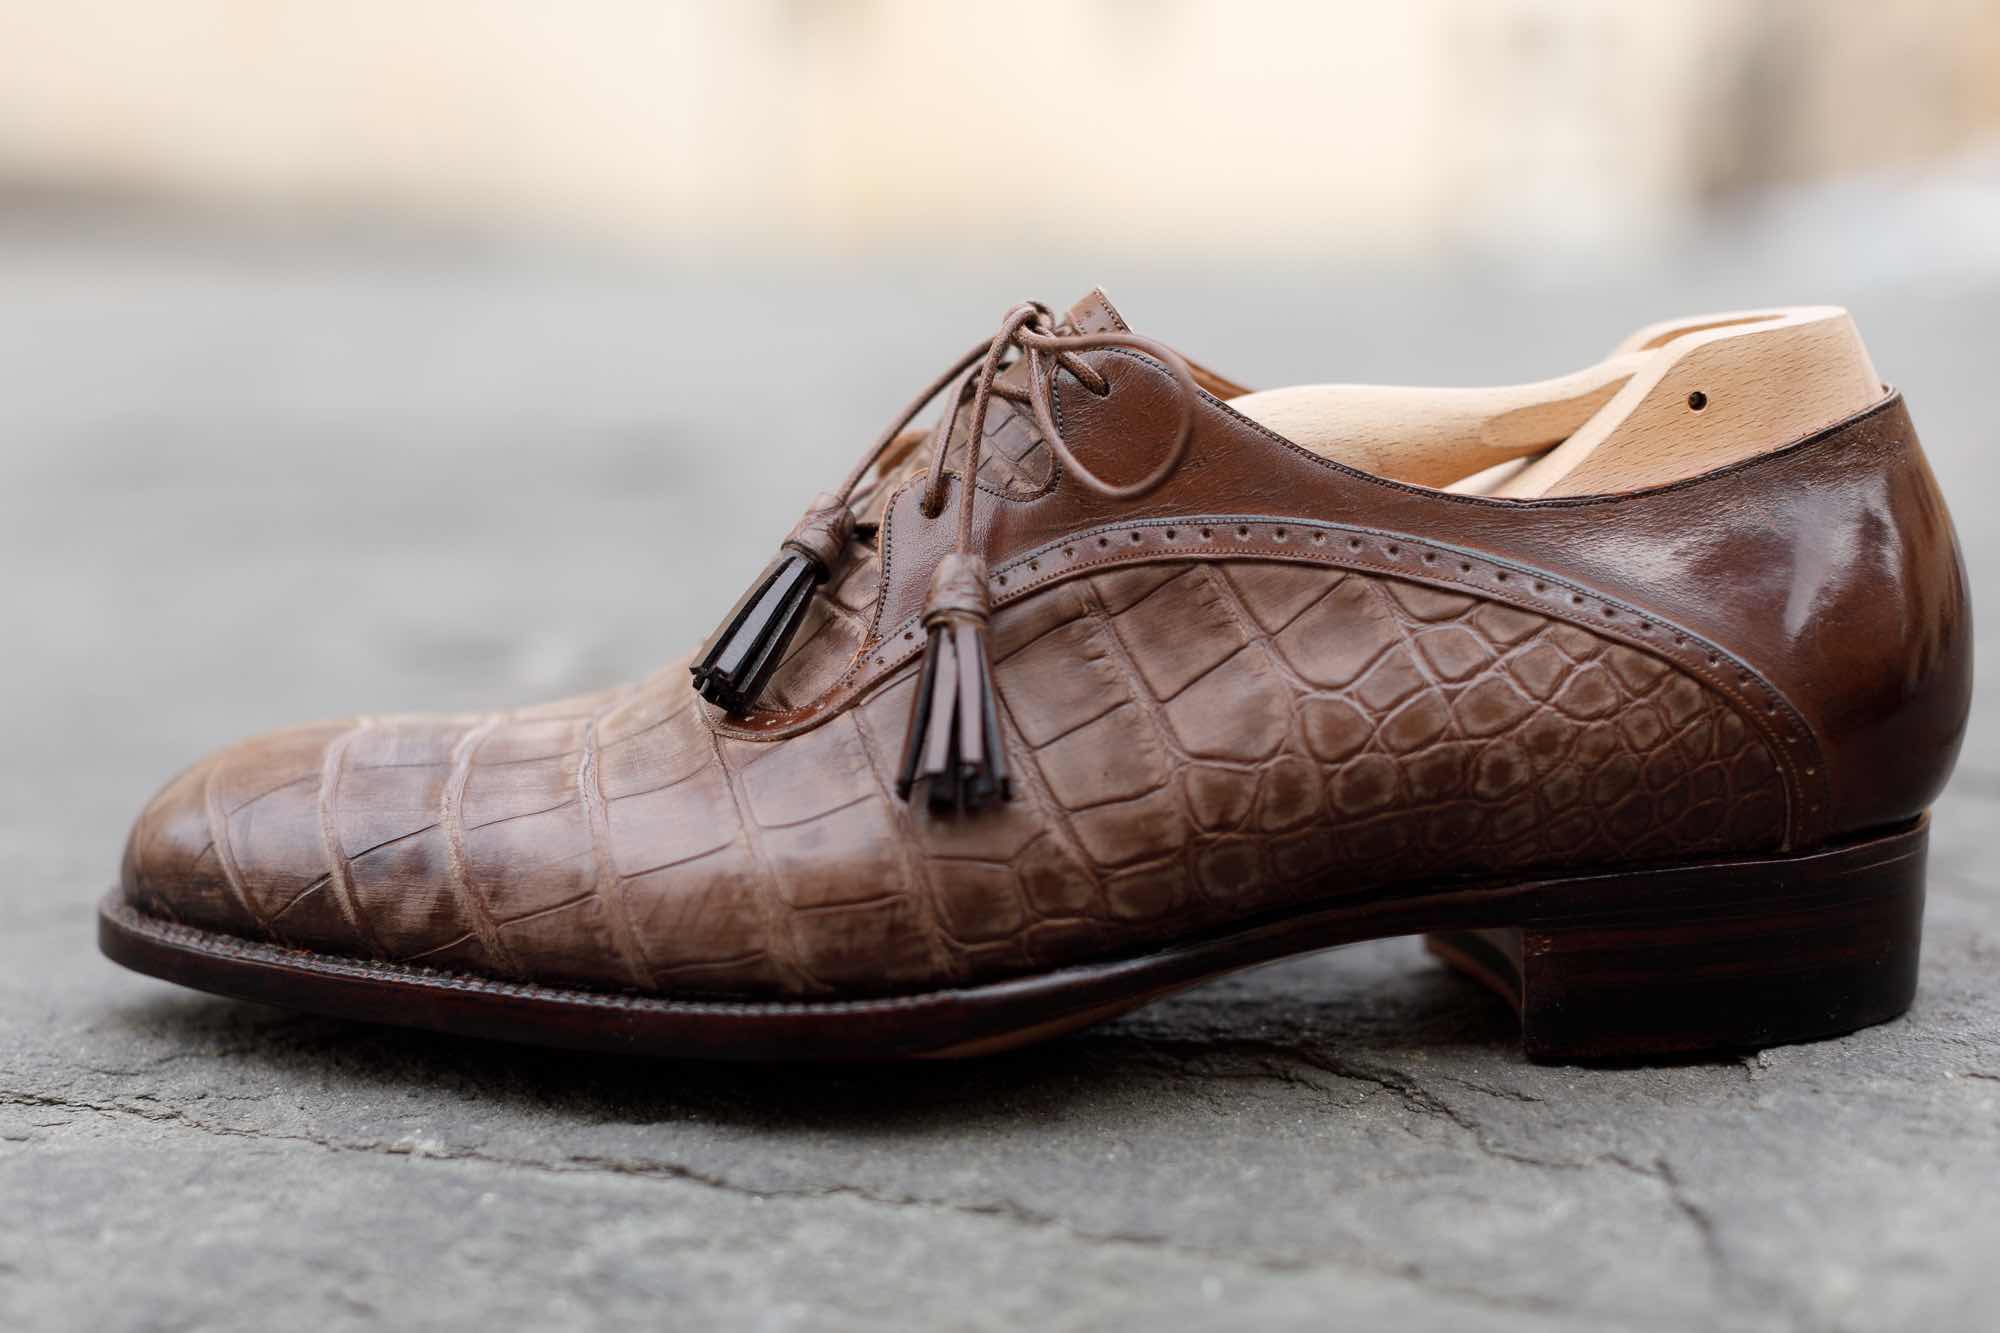 Su TuscanyPeople, l'intervista a Roberto Ugolini, l'artigiano delle scarpe su misura